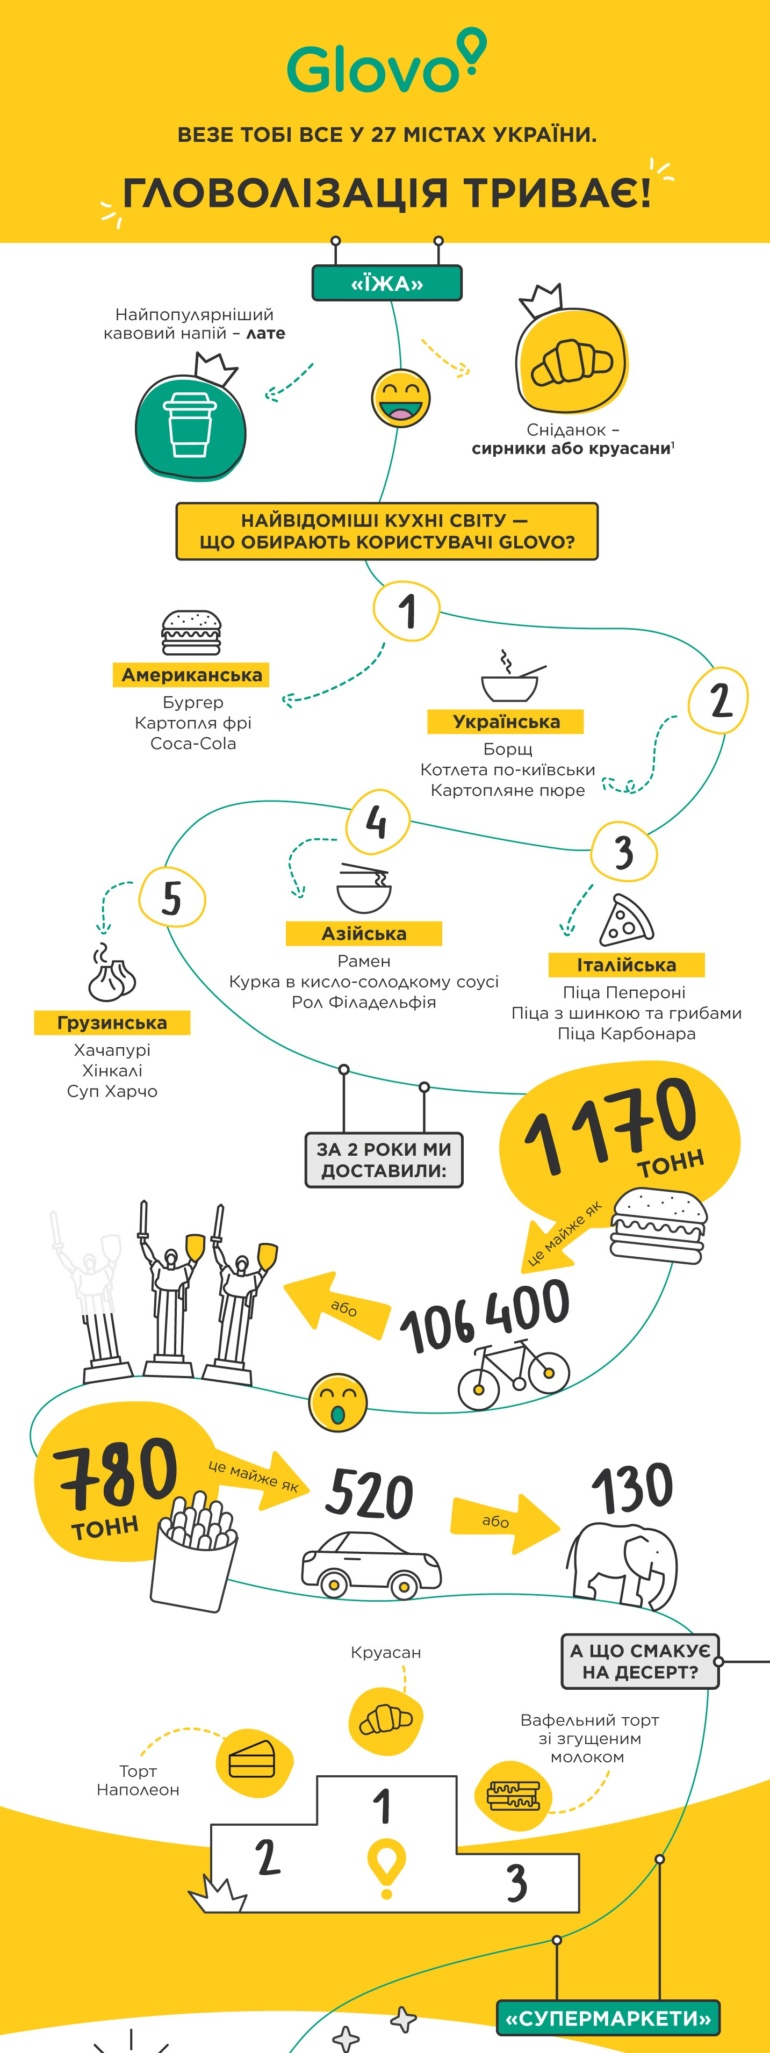 "27 городов, 2 Cook Room и 1170 тонн бургеров": Сервис курьерской доставки Glovo отметил вторую годовщину работы в Украине [инфографика]